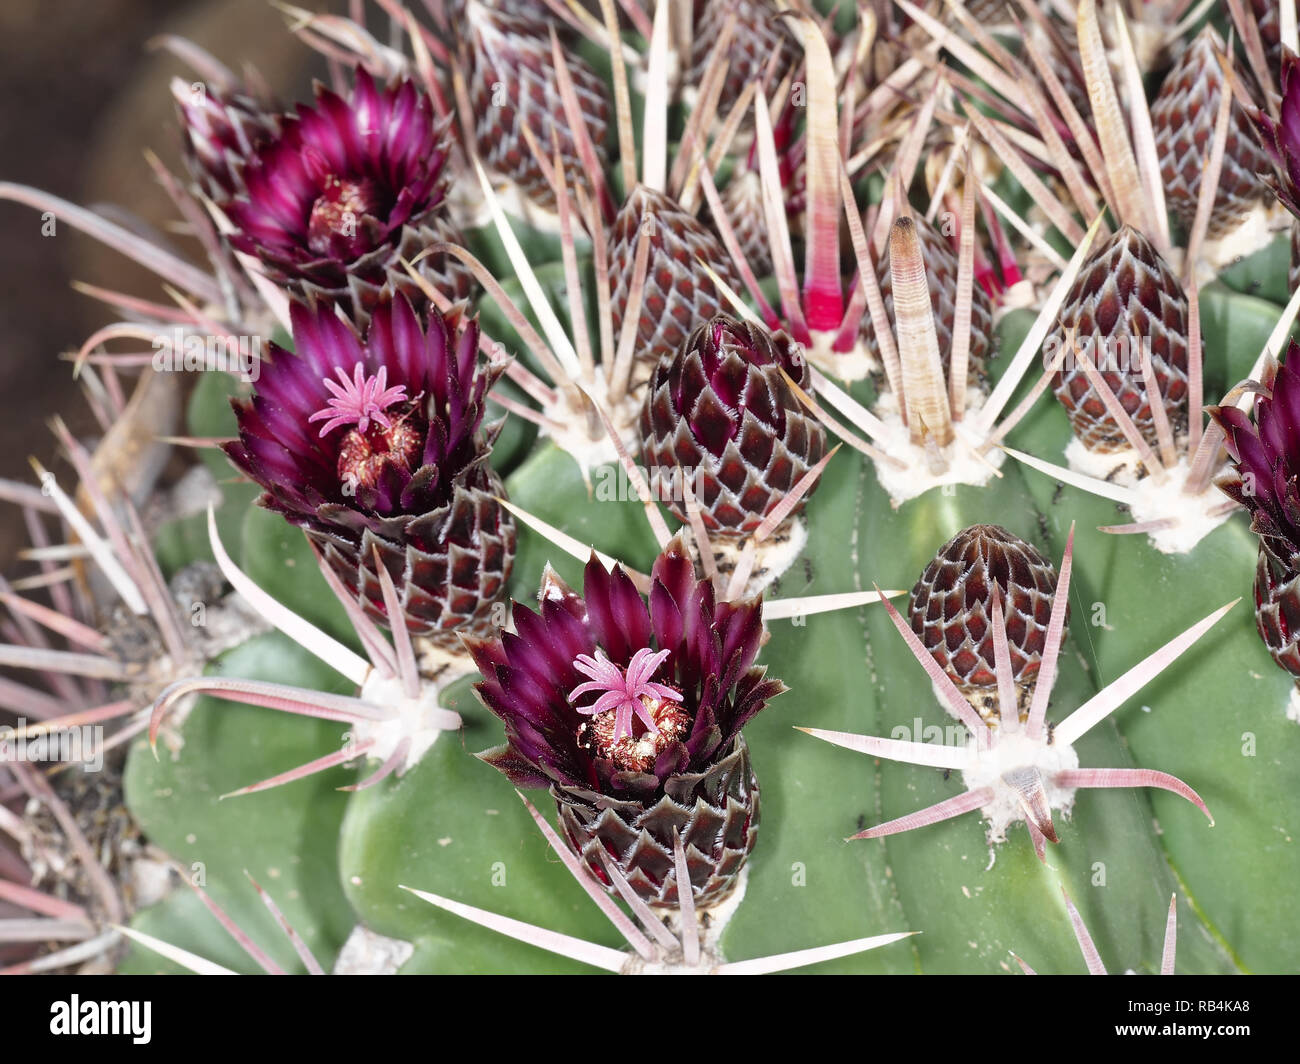 Barrel cactus Ferocactus latispinus close-up Stock Photo